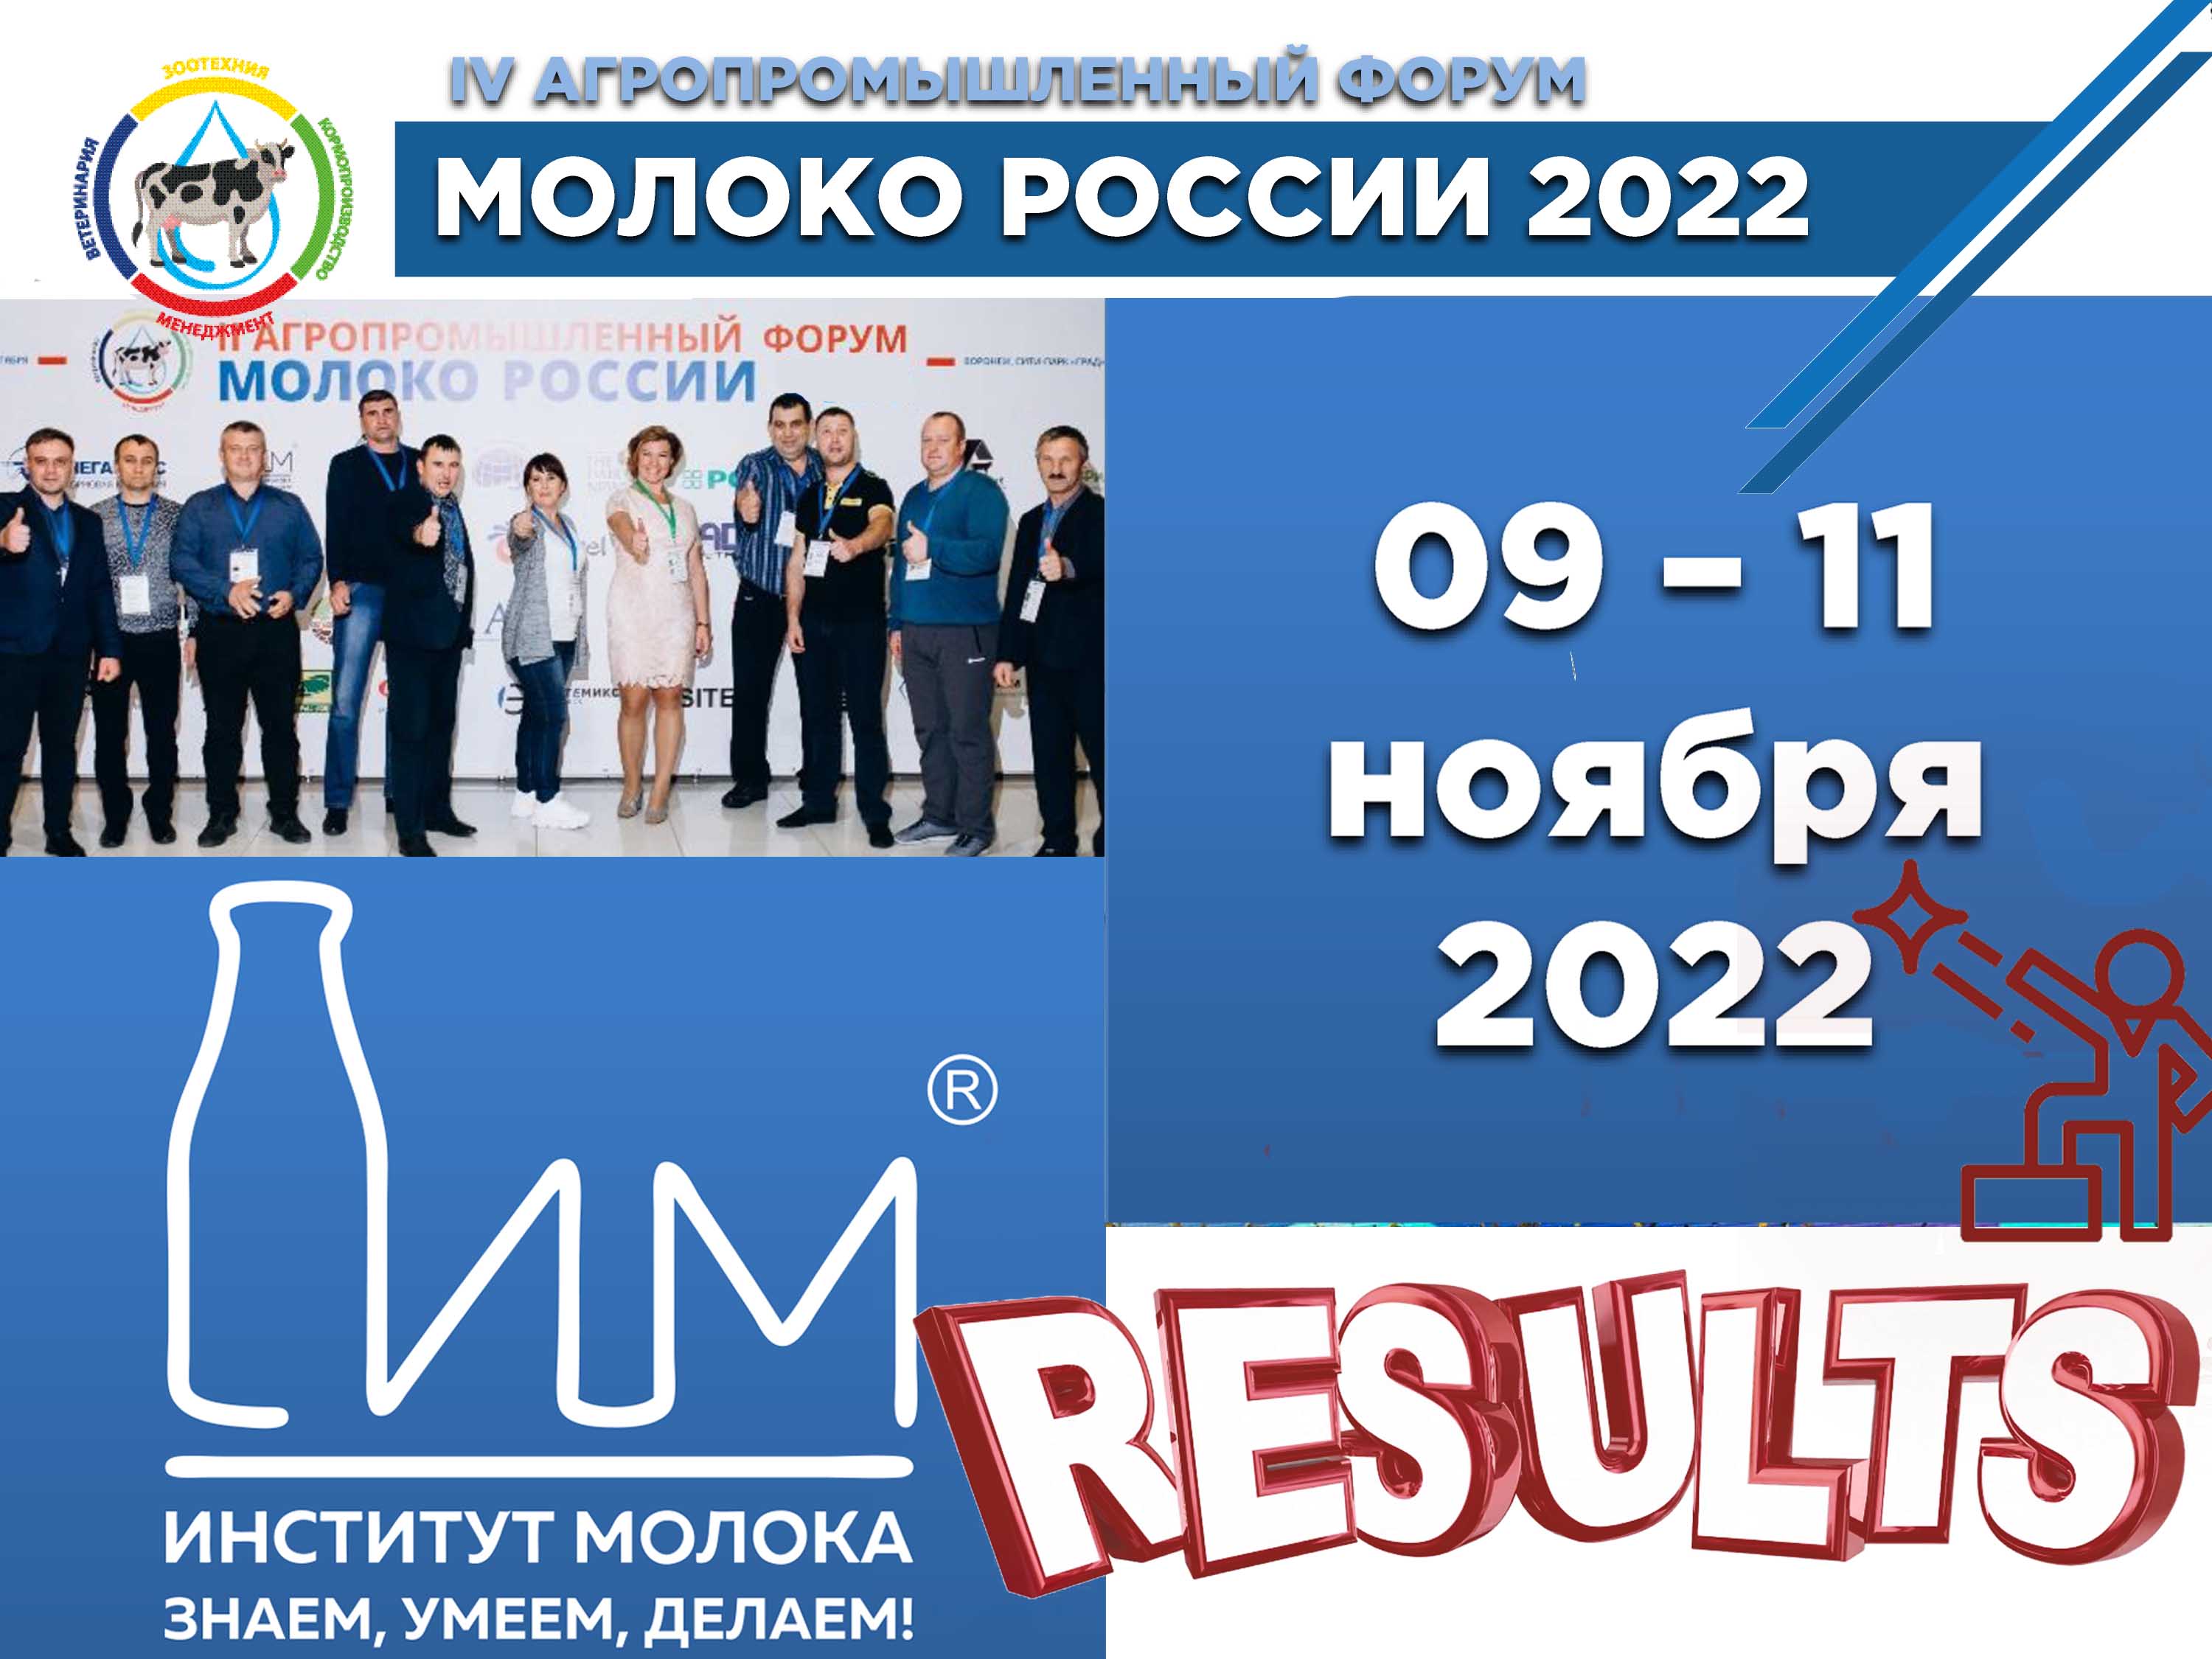 Агропромышленный Форум Молоко России 2022 в Казани